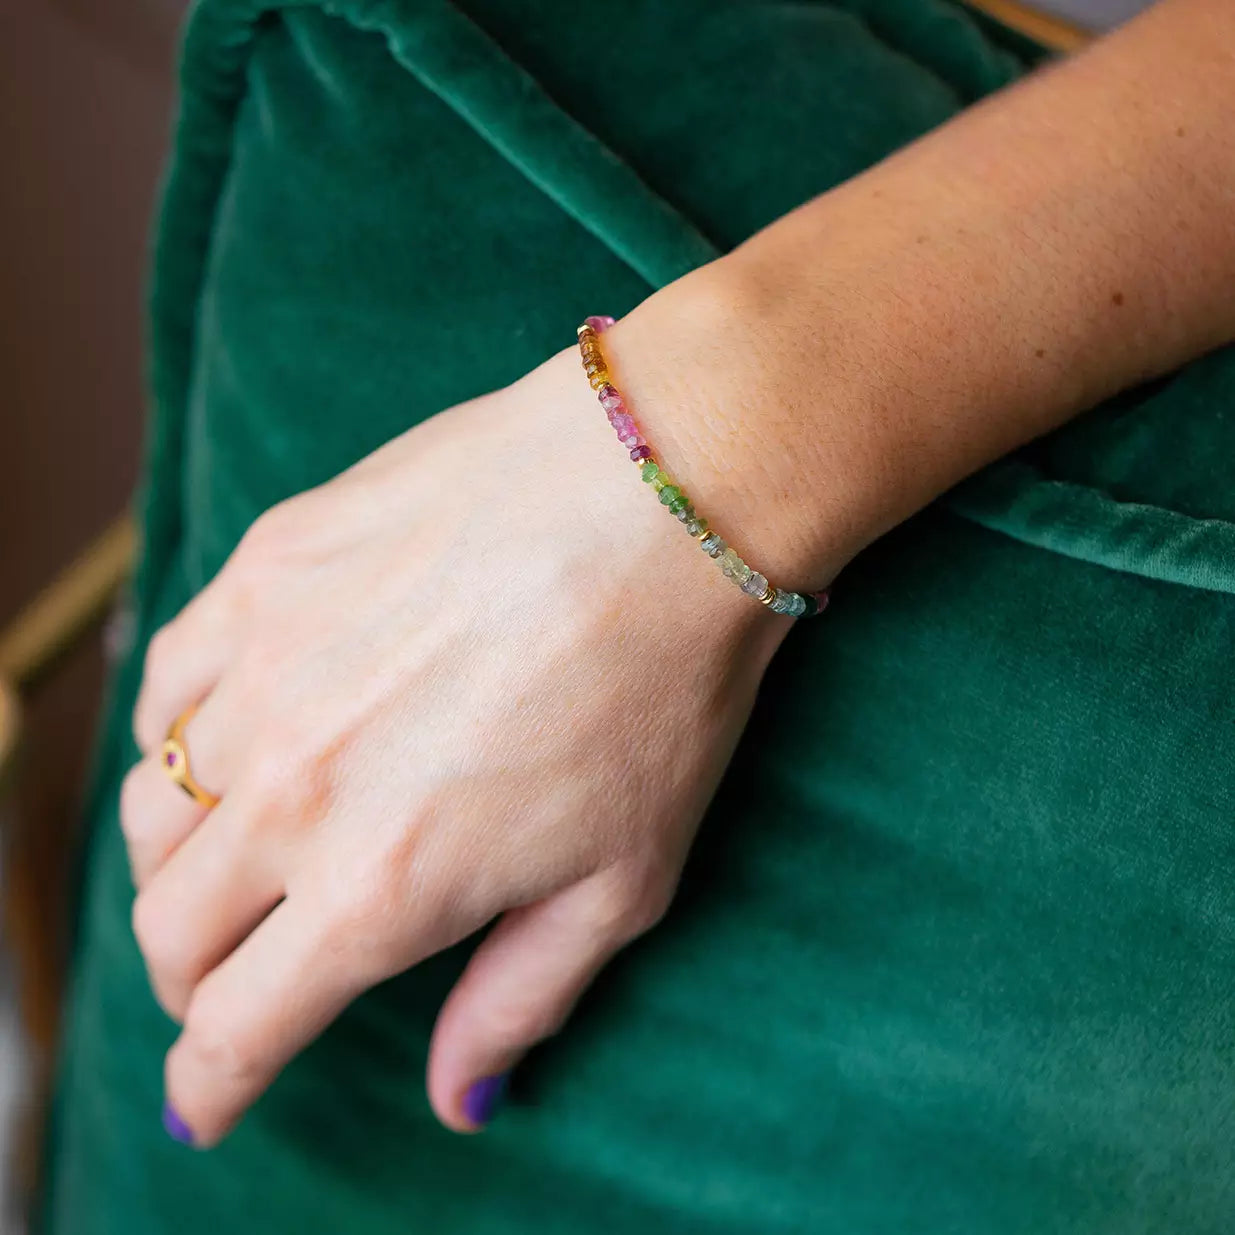 bracelet femme fait de pierres de tourmaline roses vertes et bleues portée sur une main aux ongles violet reposant sur un coussin vert